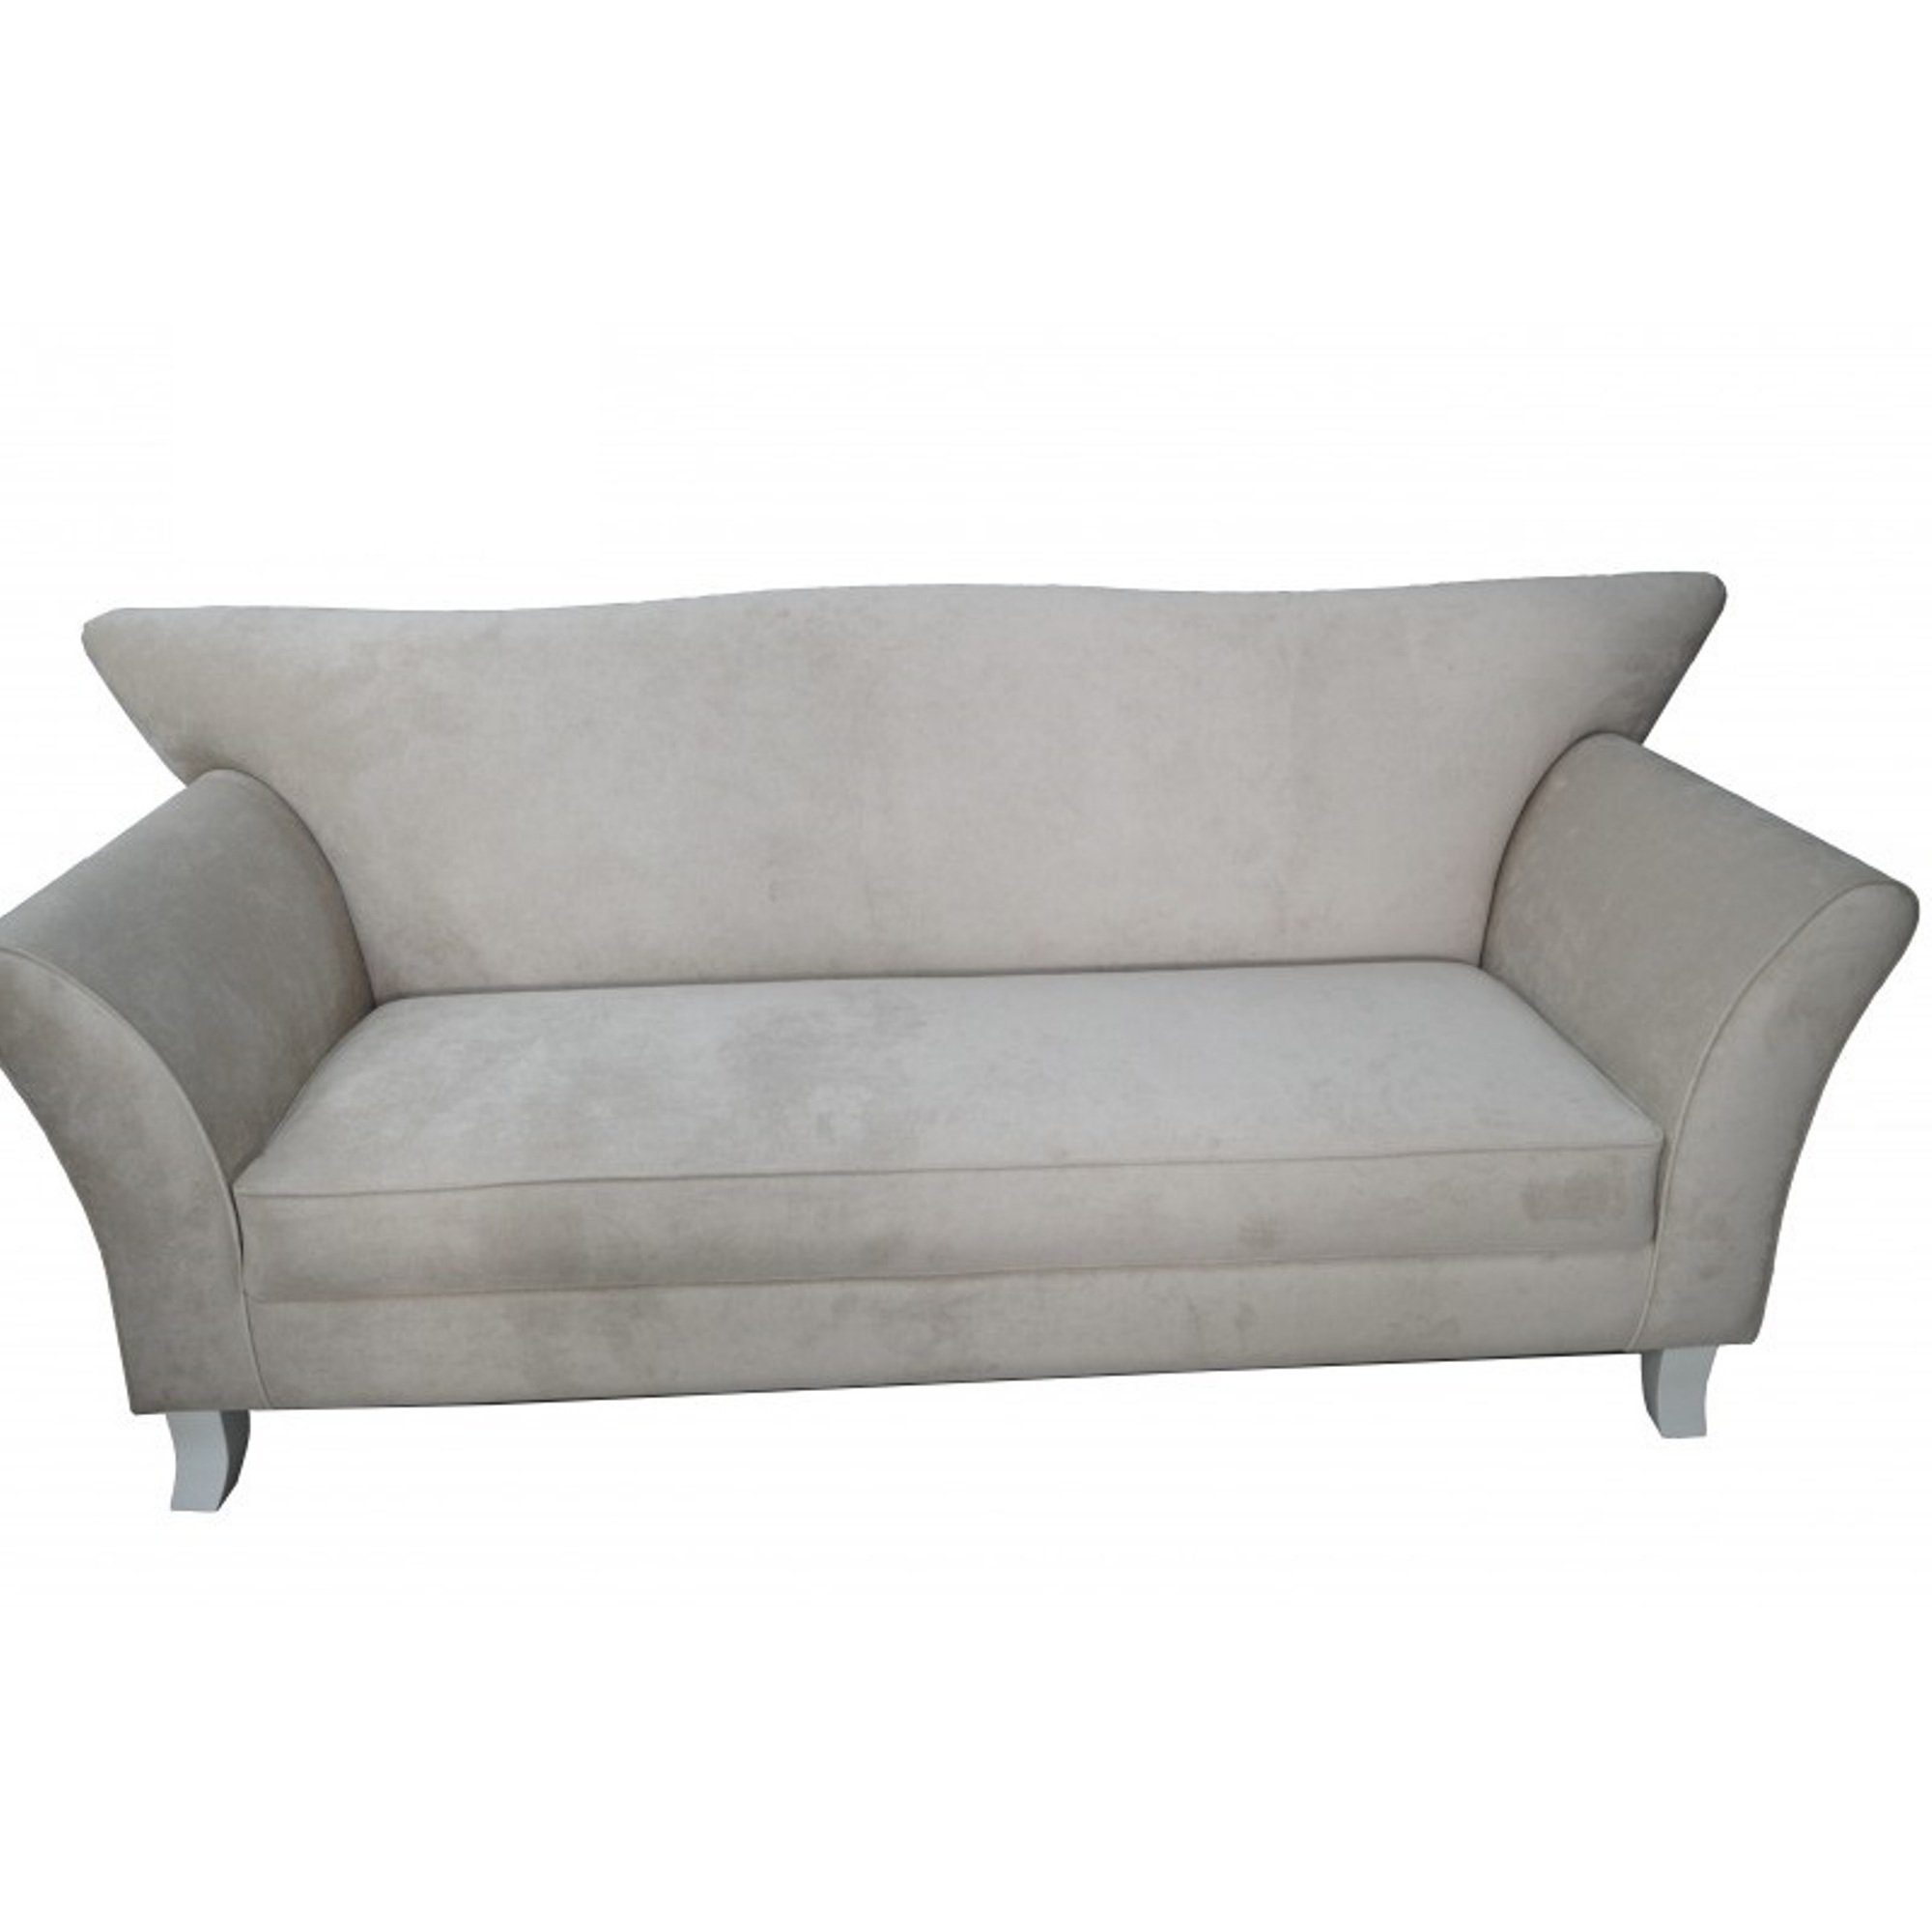 JVmoebel Sofa Moderner luxus Dreisitzer 3-er Sofa stilvolle Couch Neu, Made in Europe